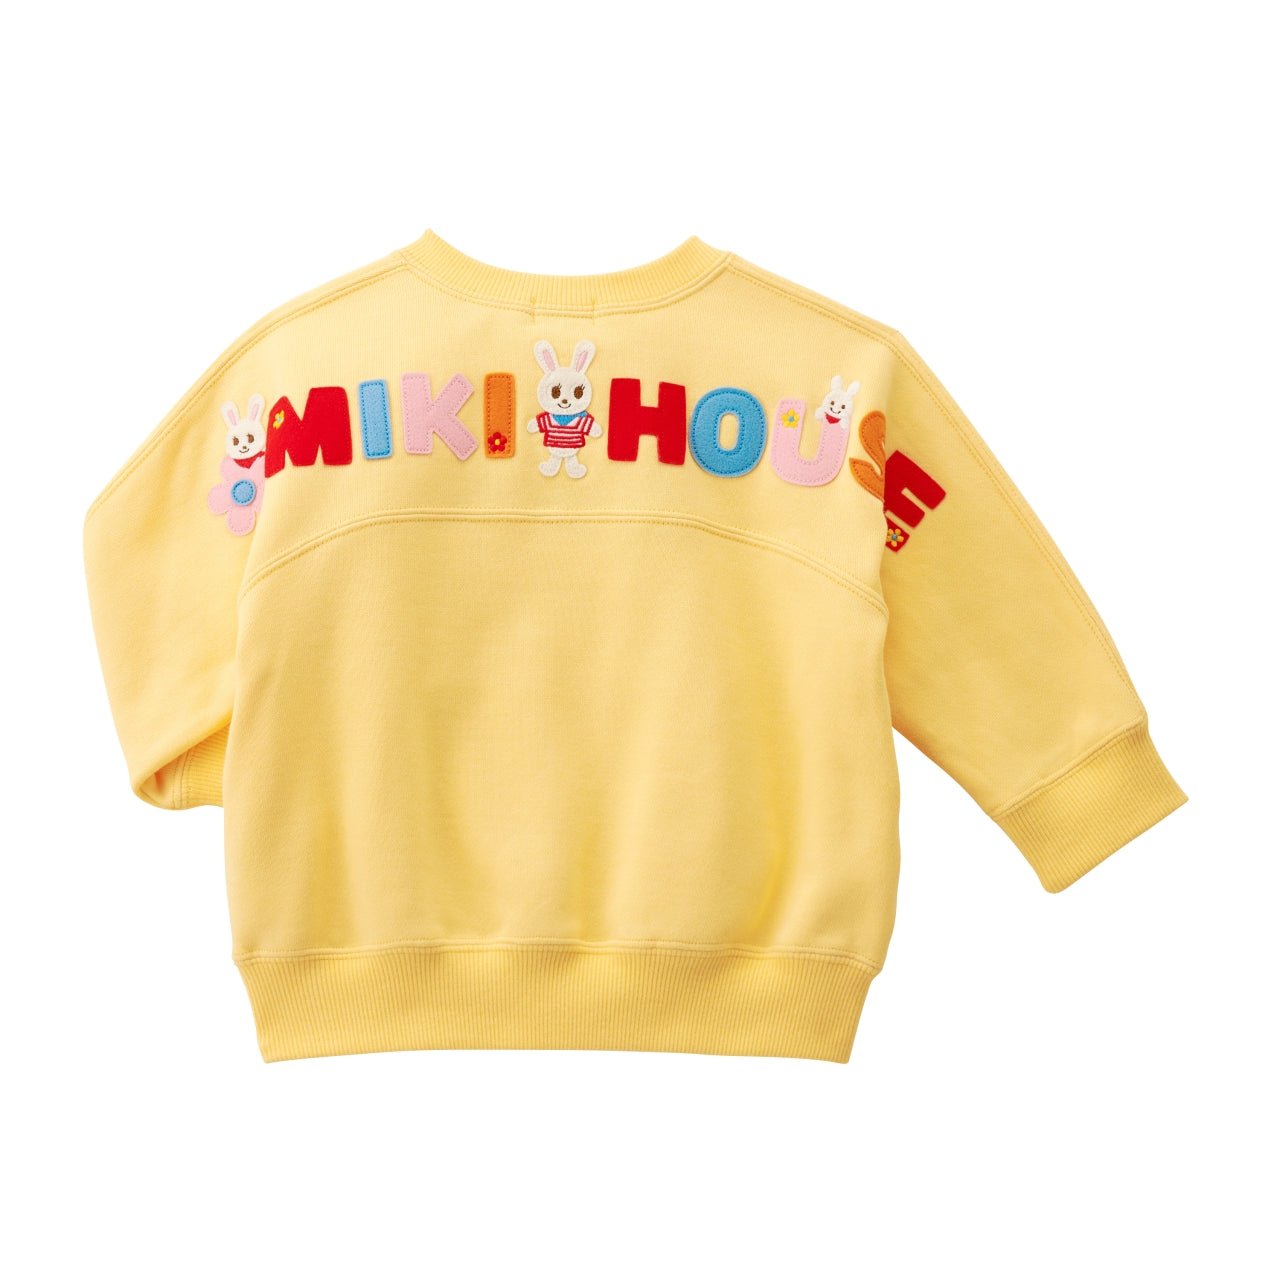 Kangaroo Pocket Sweatshirt - Usako - 13-5606-571-04-80